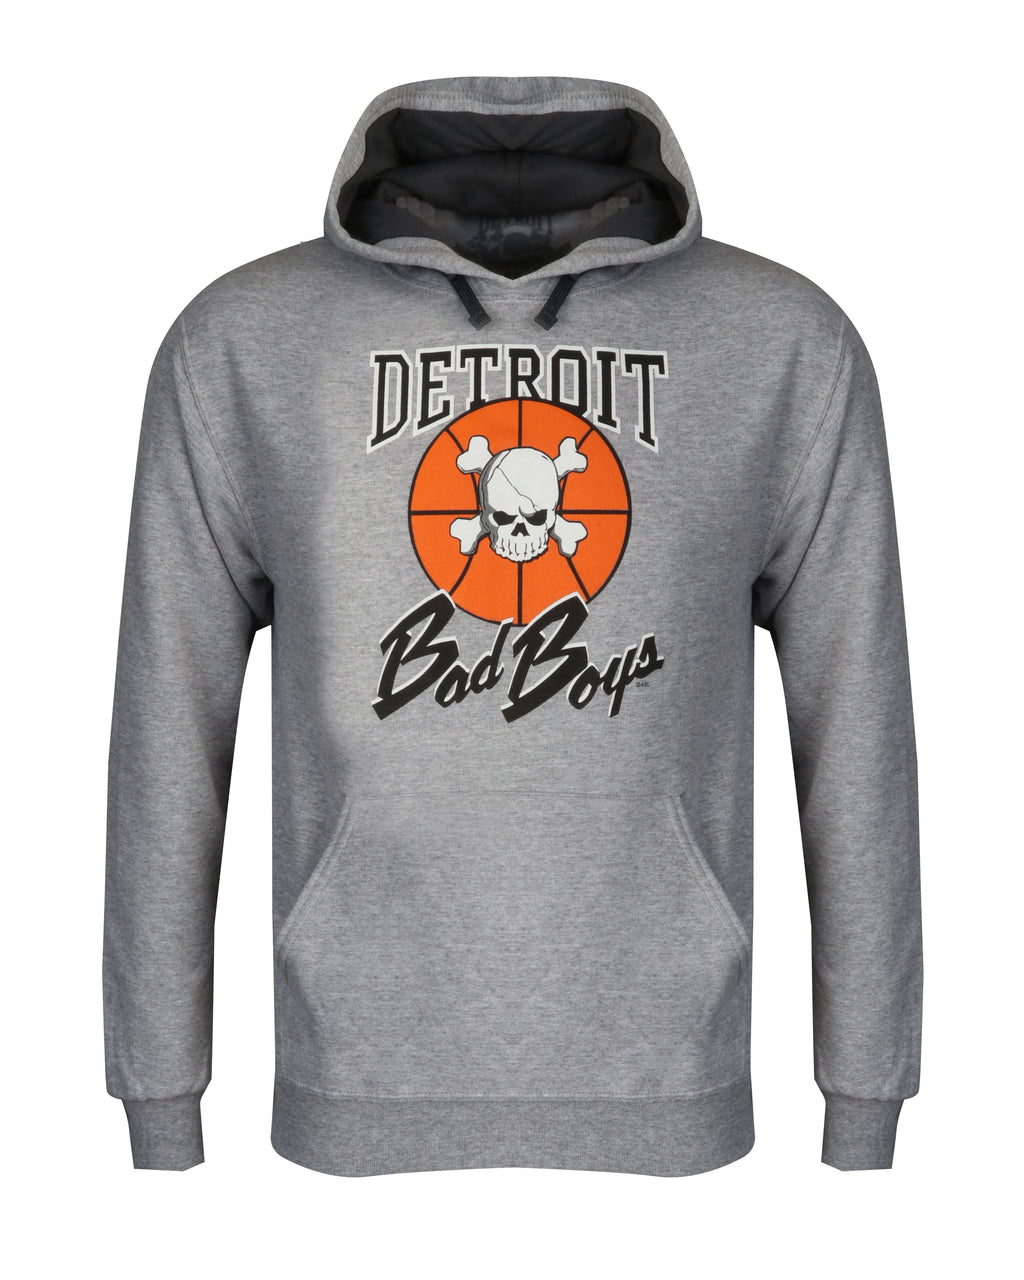 Detroit Pistons Bad Boys Jacket  Detroit Bad Boys Dennis Rodman Jacket